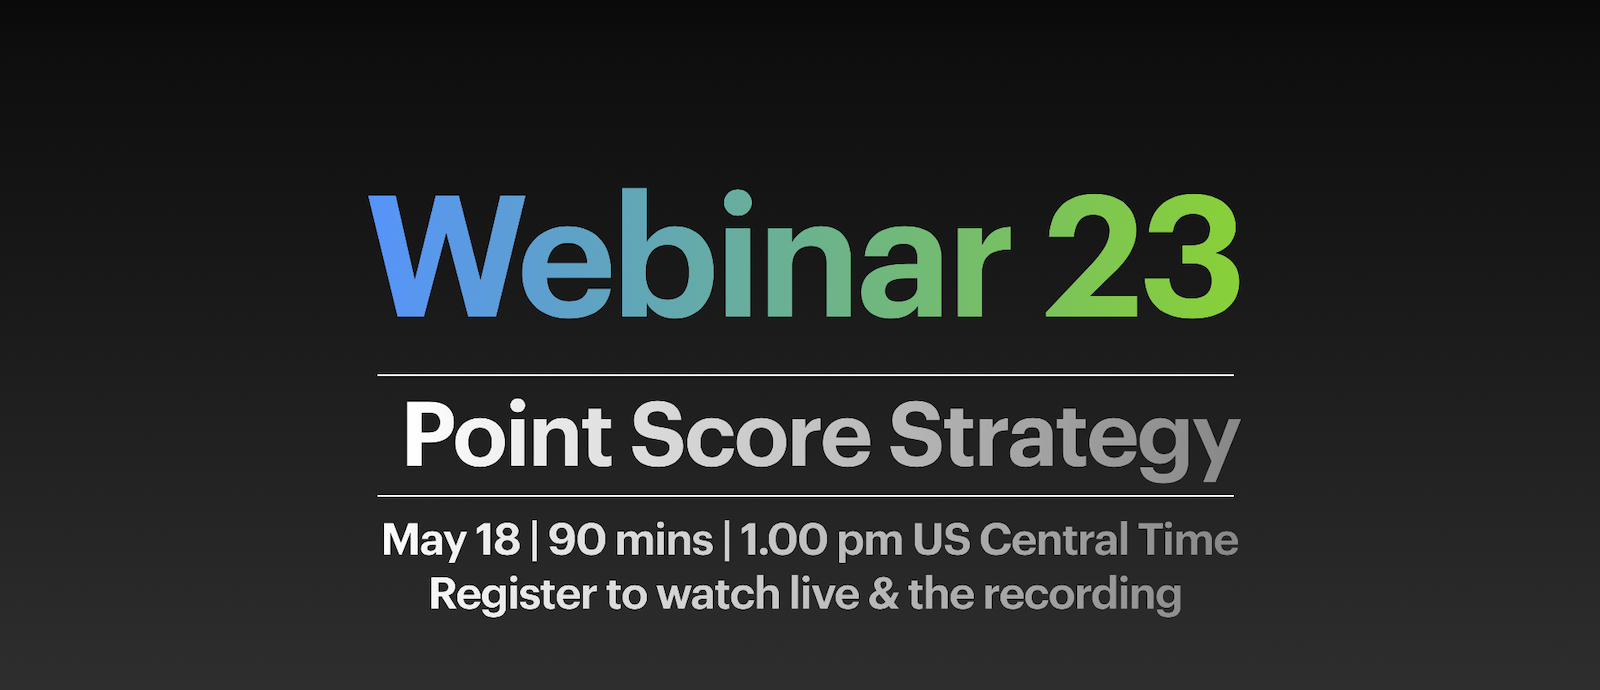 Webinar 23 Point Score Strategy